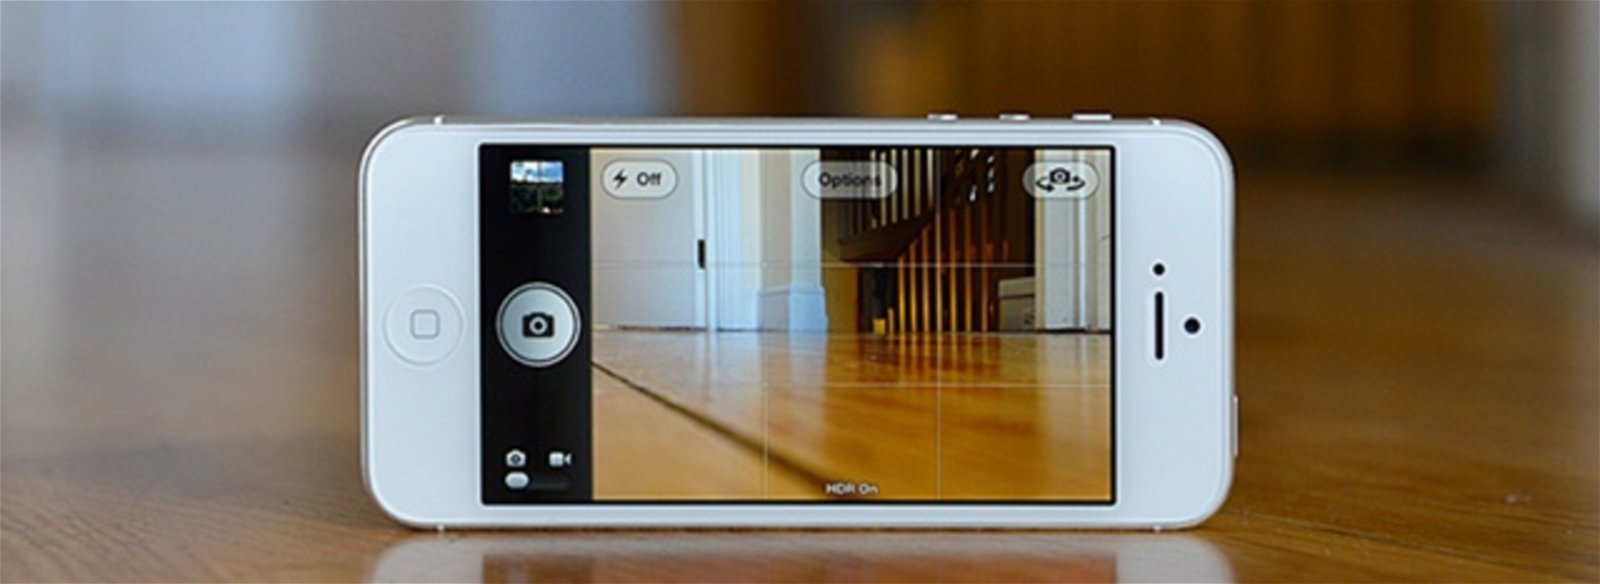 App cámara iPhone 5